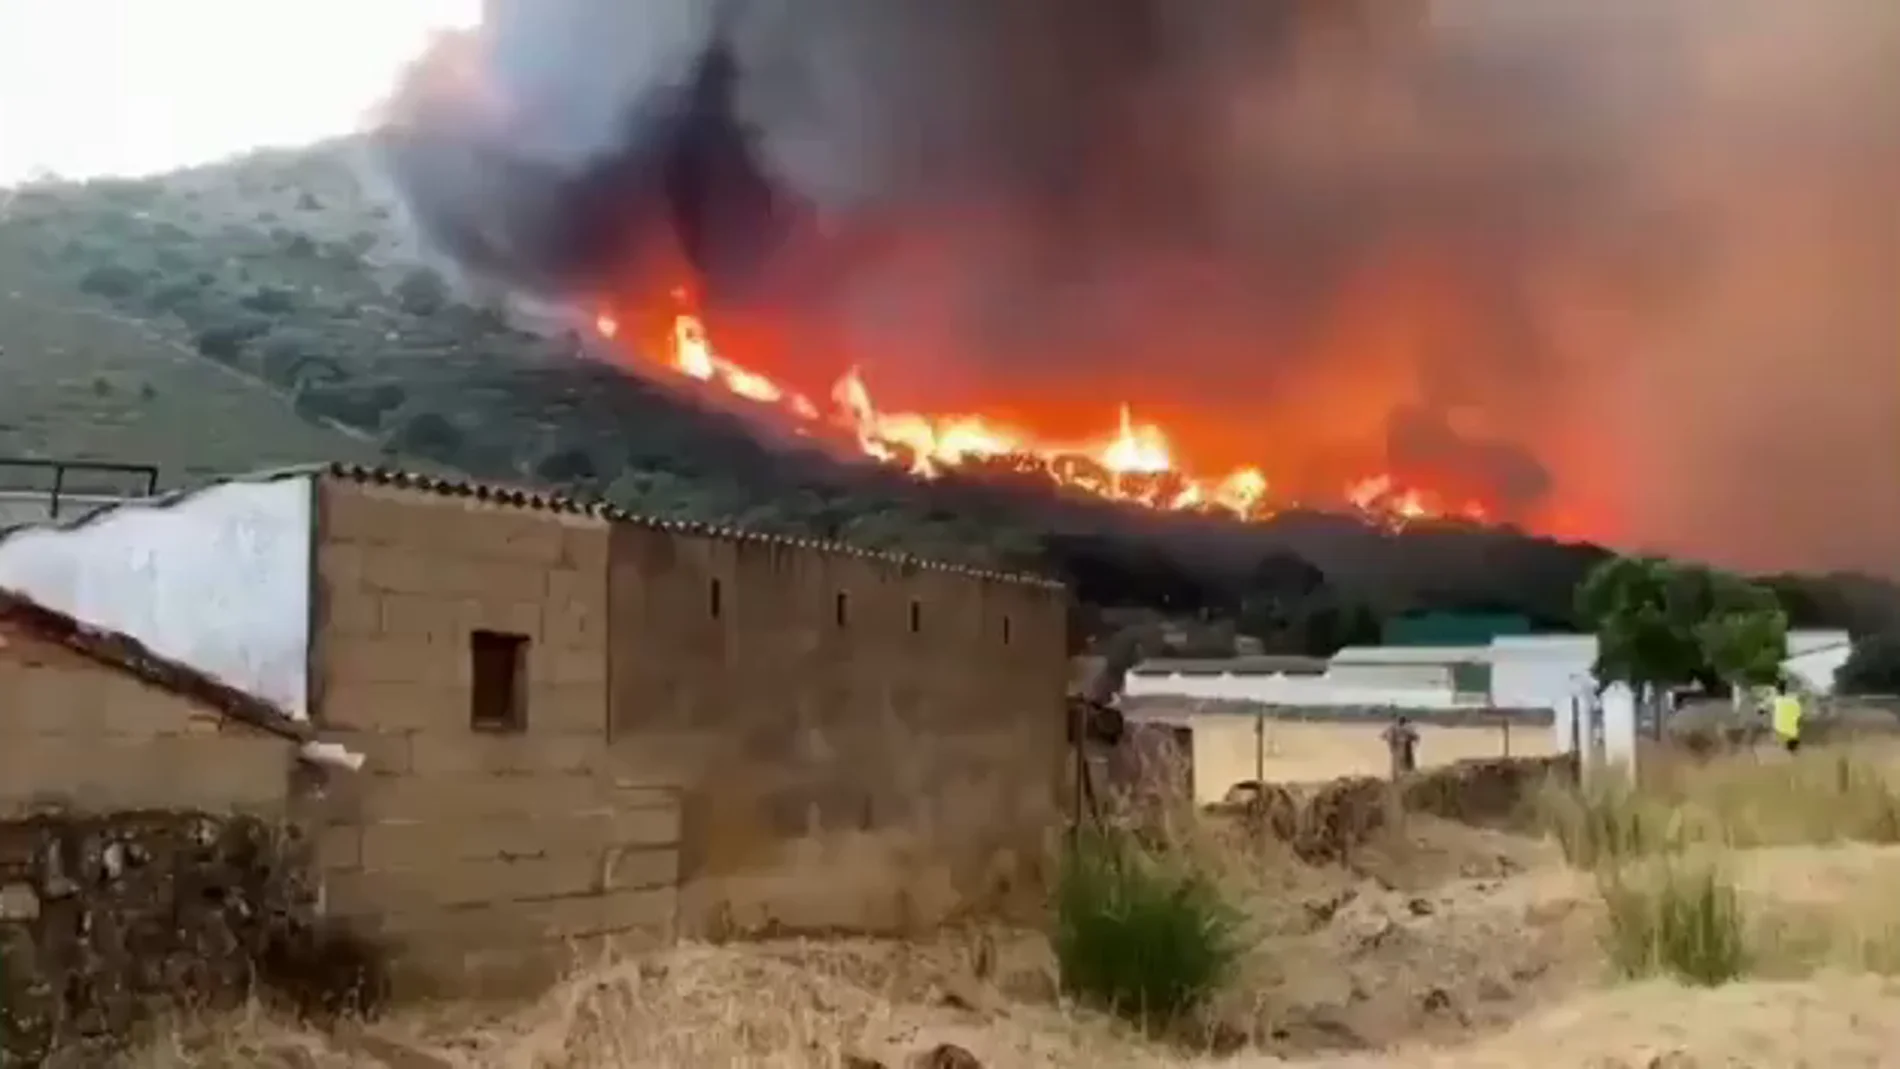 100 efectivos trabajan en el incendio de Alburquerque, en Badajoz, que según Infoex "evoluciona favorablemente"